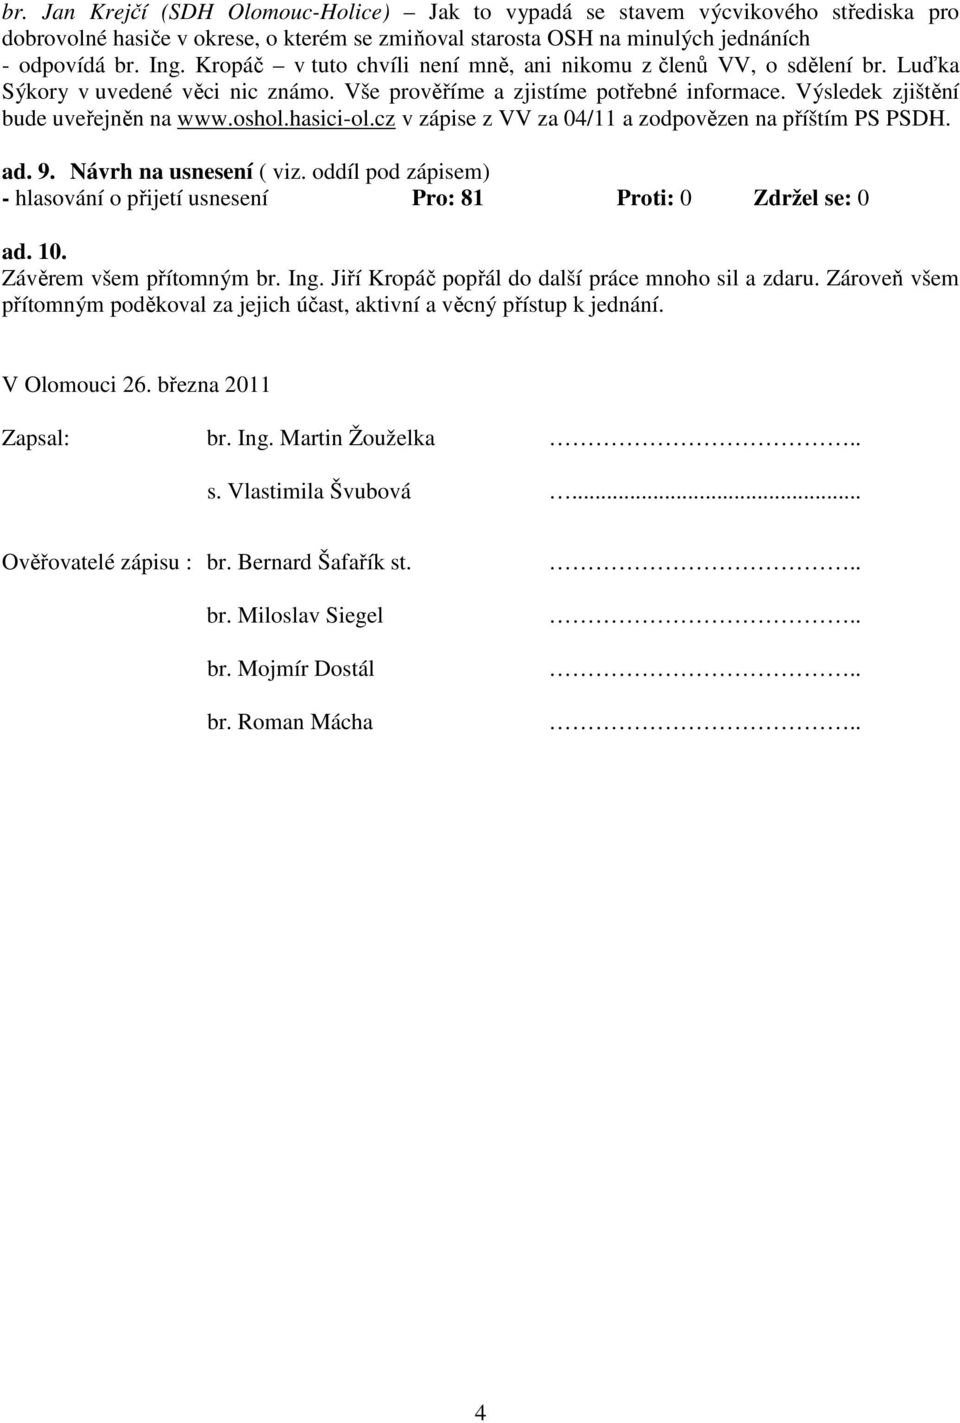 hasici-ol.cz v zápise z VV za 04/11 a zodpovězen na příštím PS PSDH. ad. 9. Návrh na usnesení ( viz. oddíl pod zápisem) - hlasování o přijetí usnesení Pro: 81 Proti: 0 Zdržel se: 0 ad. 10.